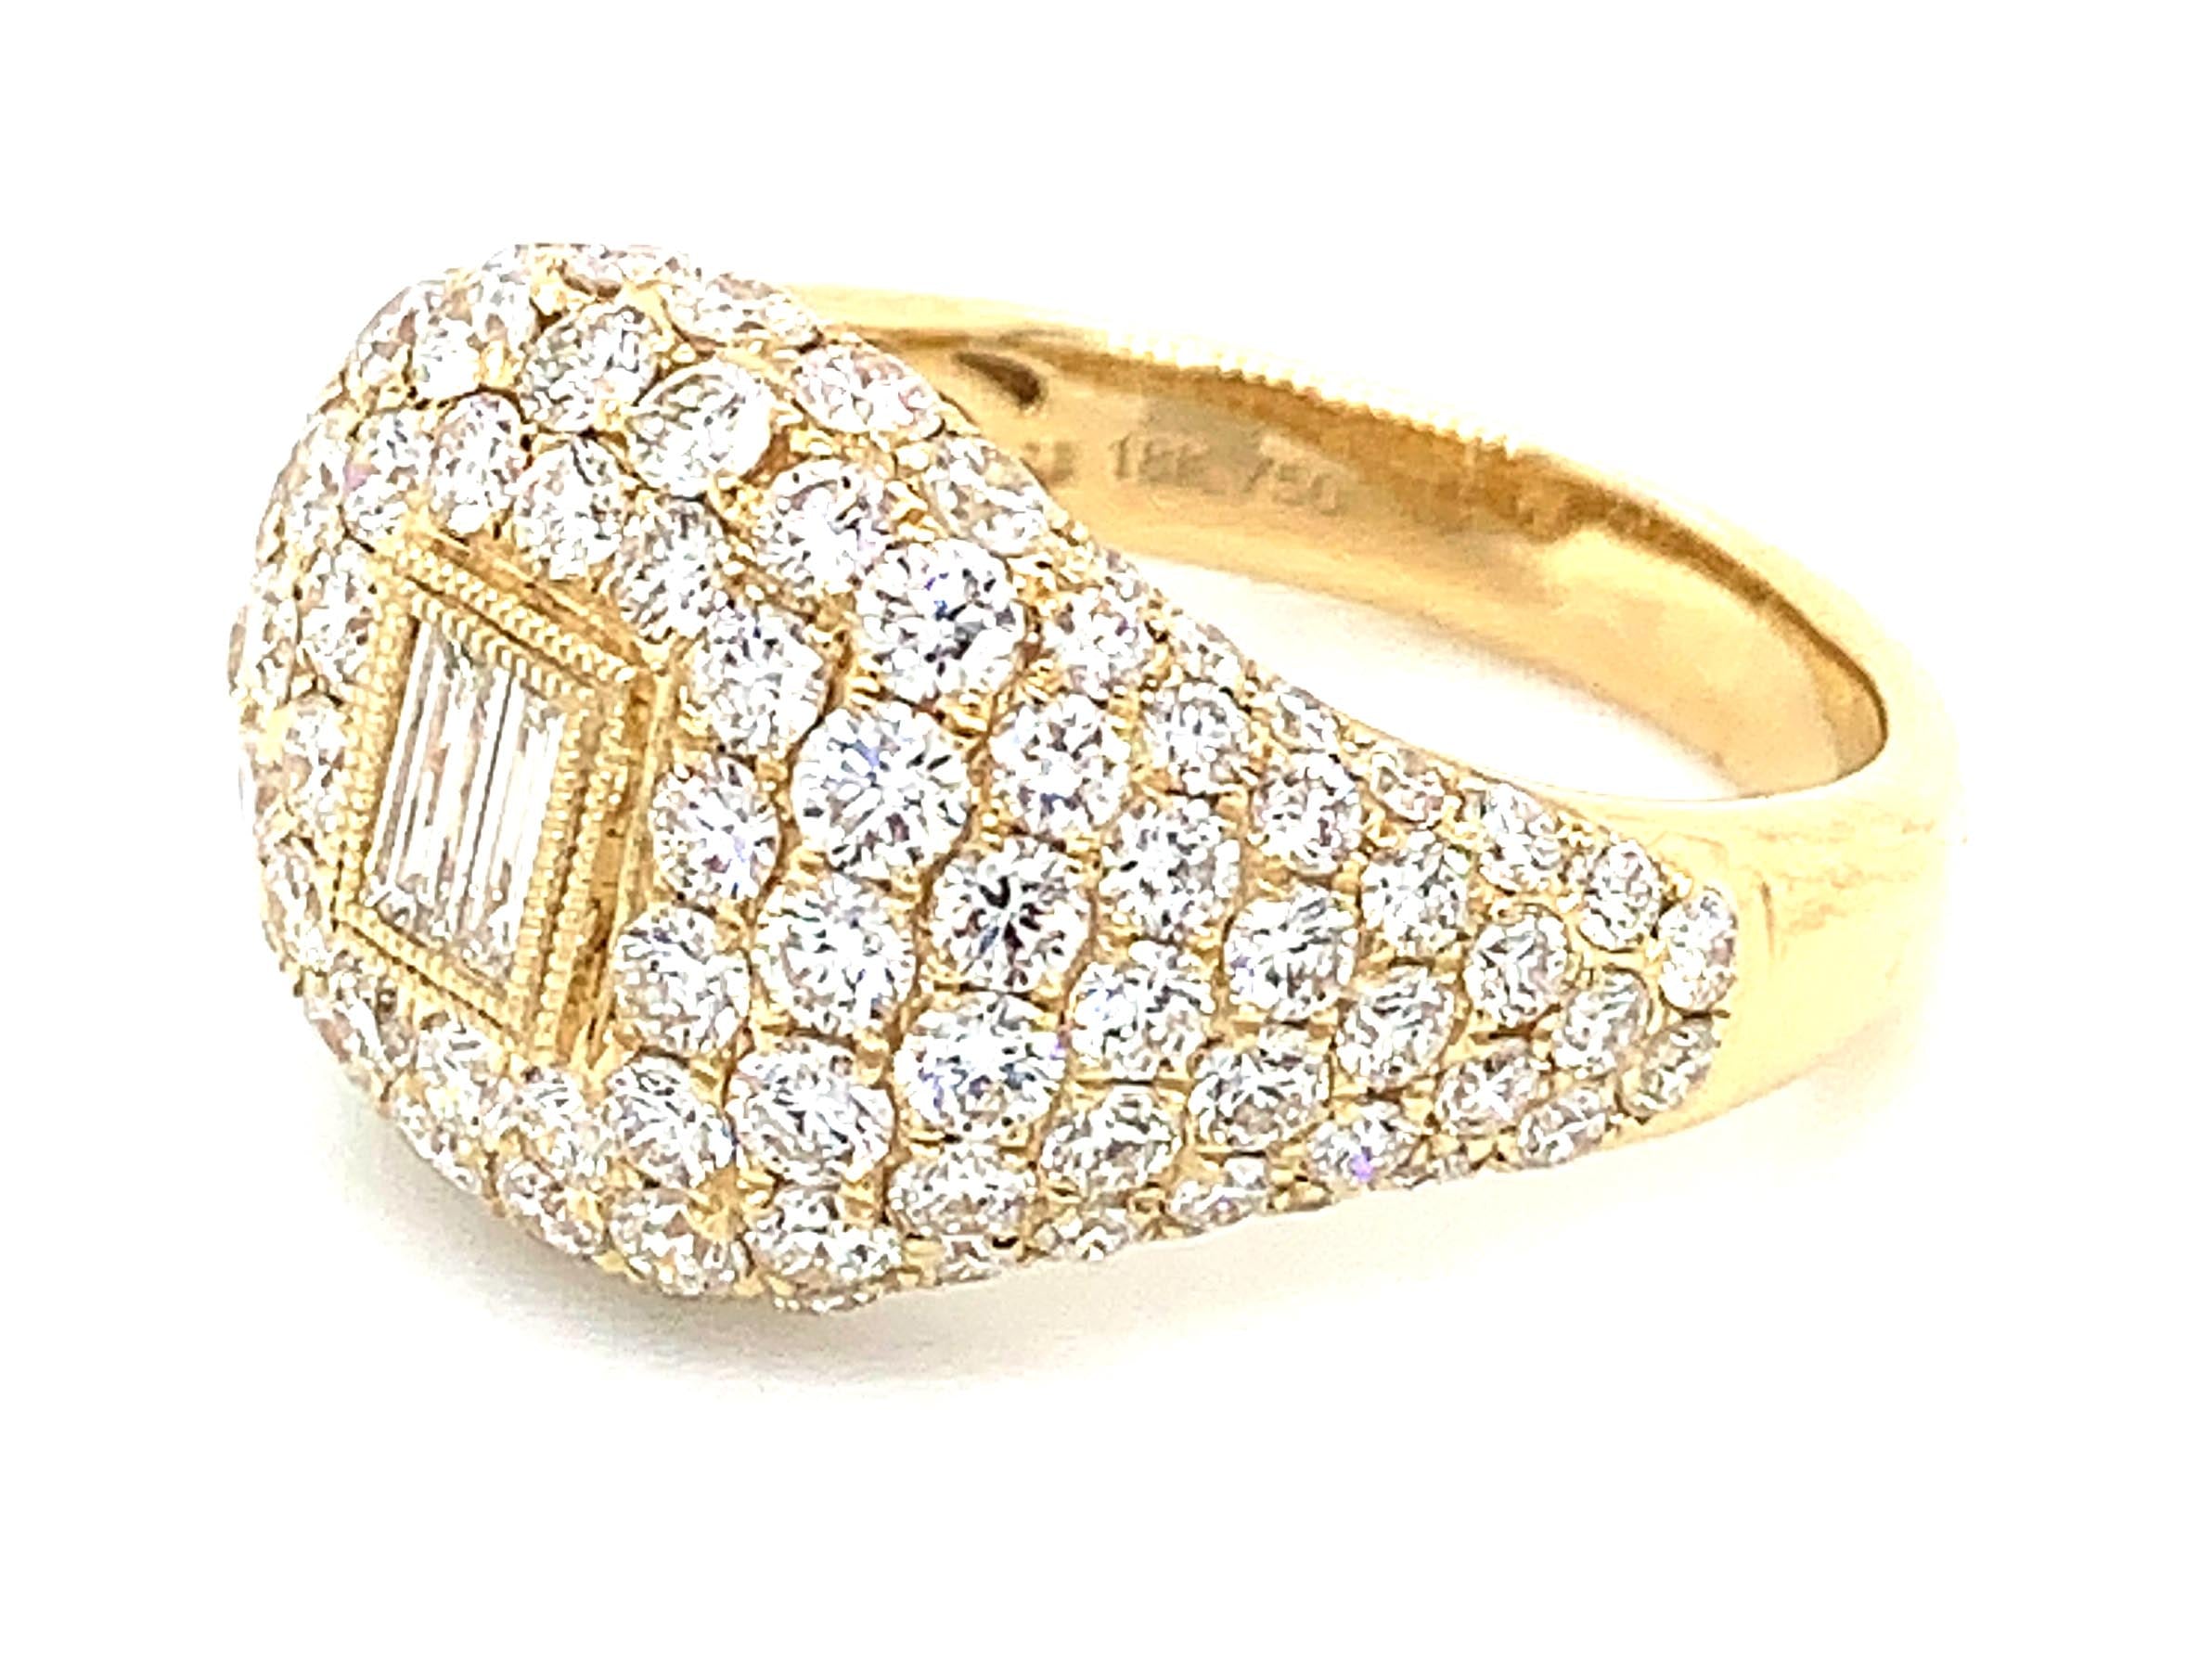 engagement ring pave diamond wedding gold ring anniversary Haniken Jewelers New York